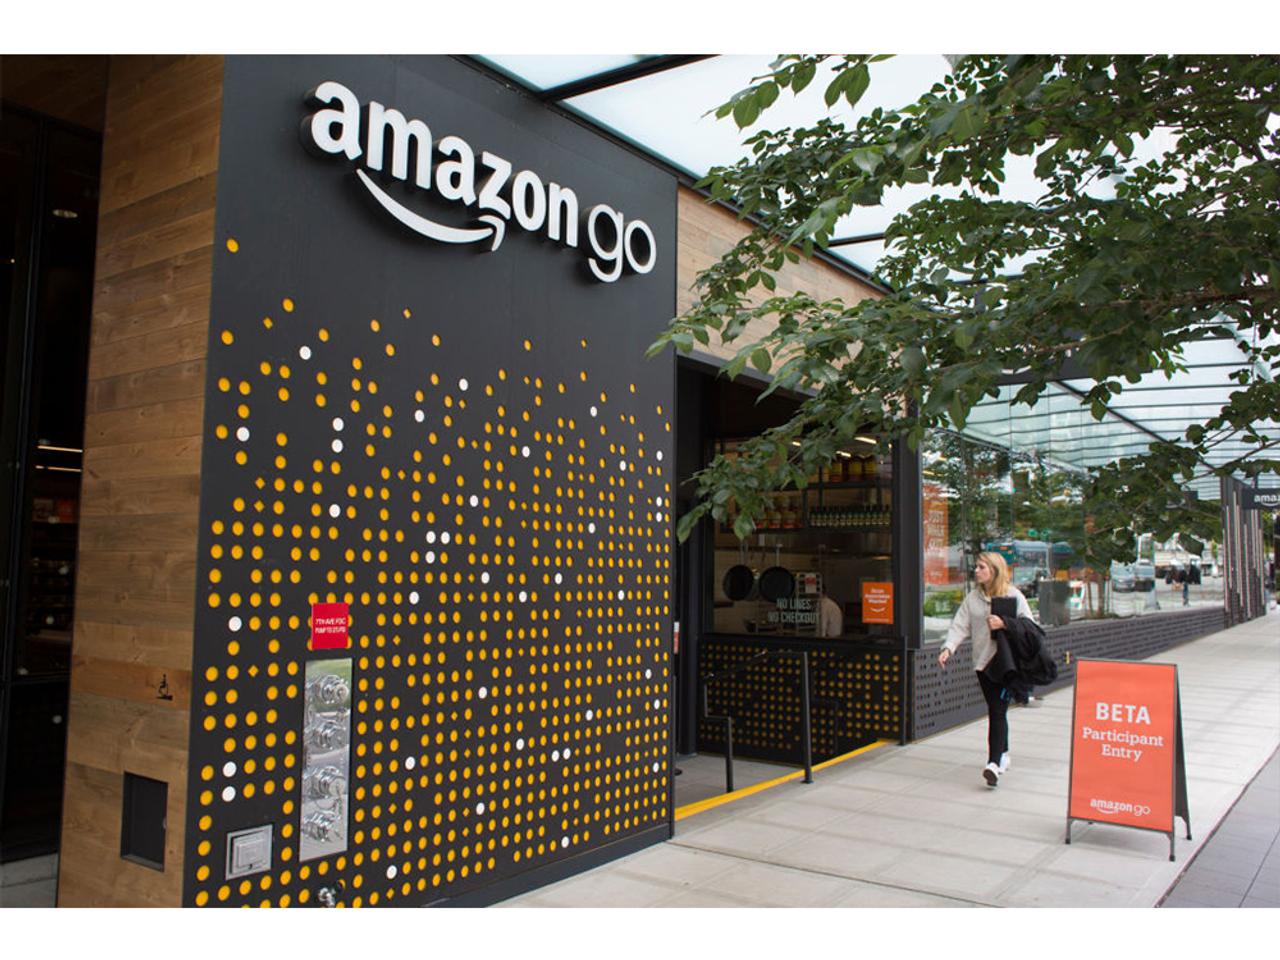 Amazonの無人小売店｢Amazon Go｣、ピカチュウコスチュームに惑わされず。しかし依然として問題あり…？